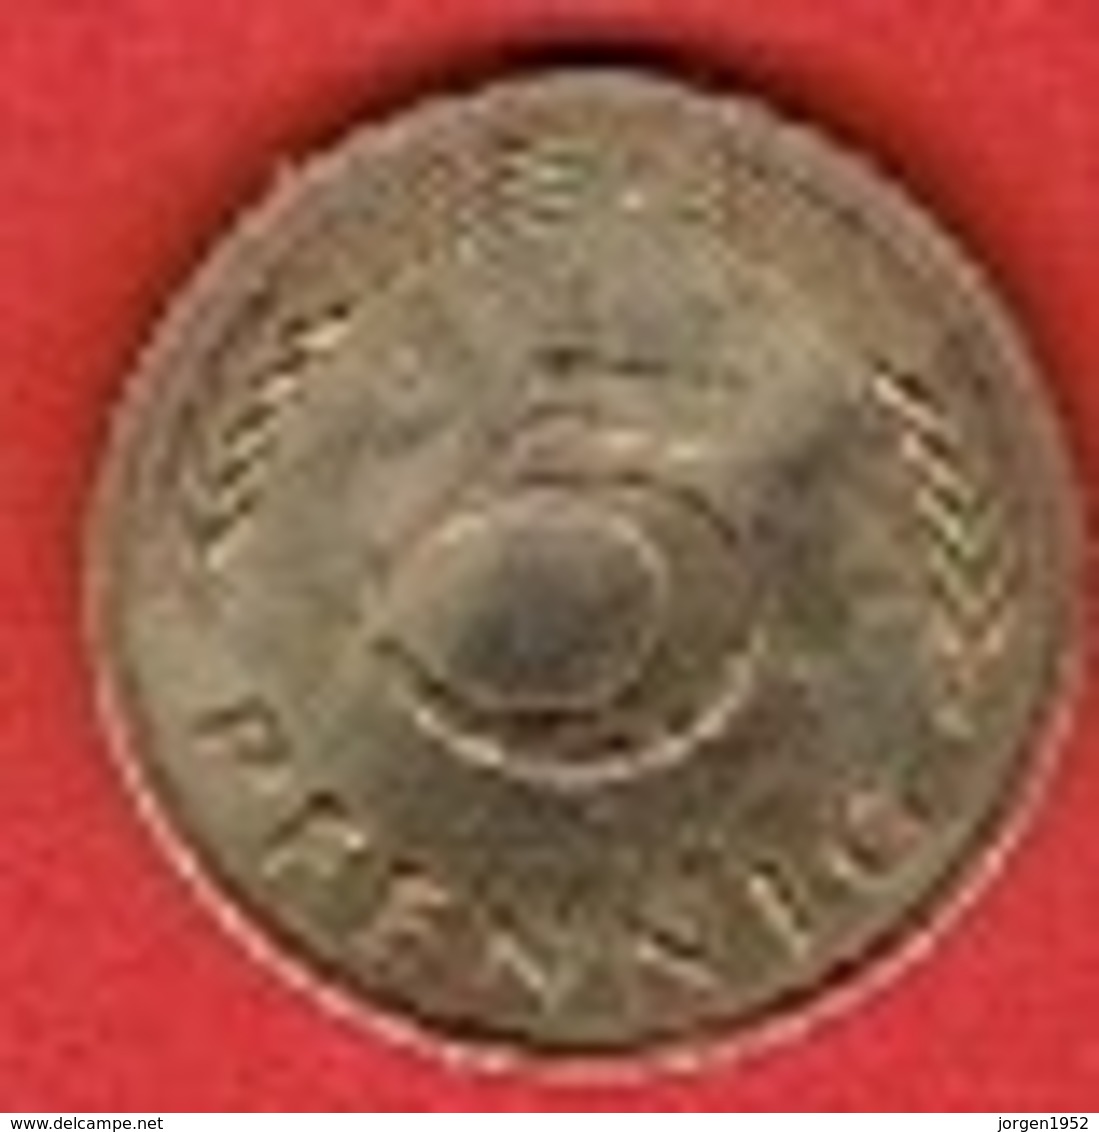 GERMANY  #  5 PFENNIG FROM 1976 - 5 Pfennig